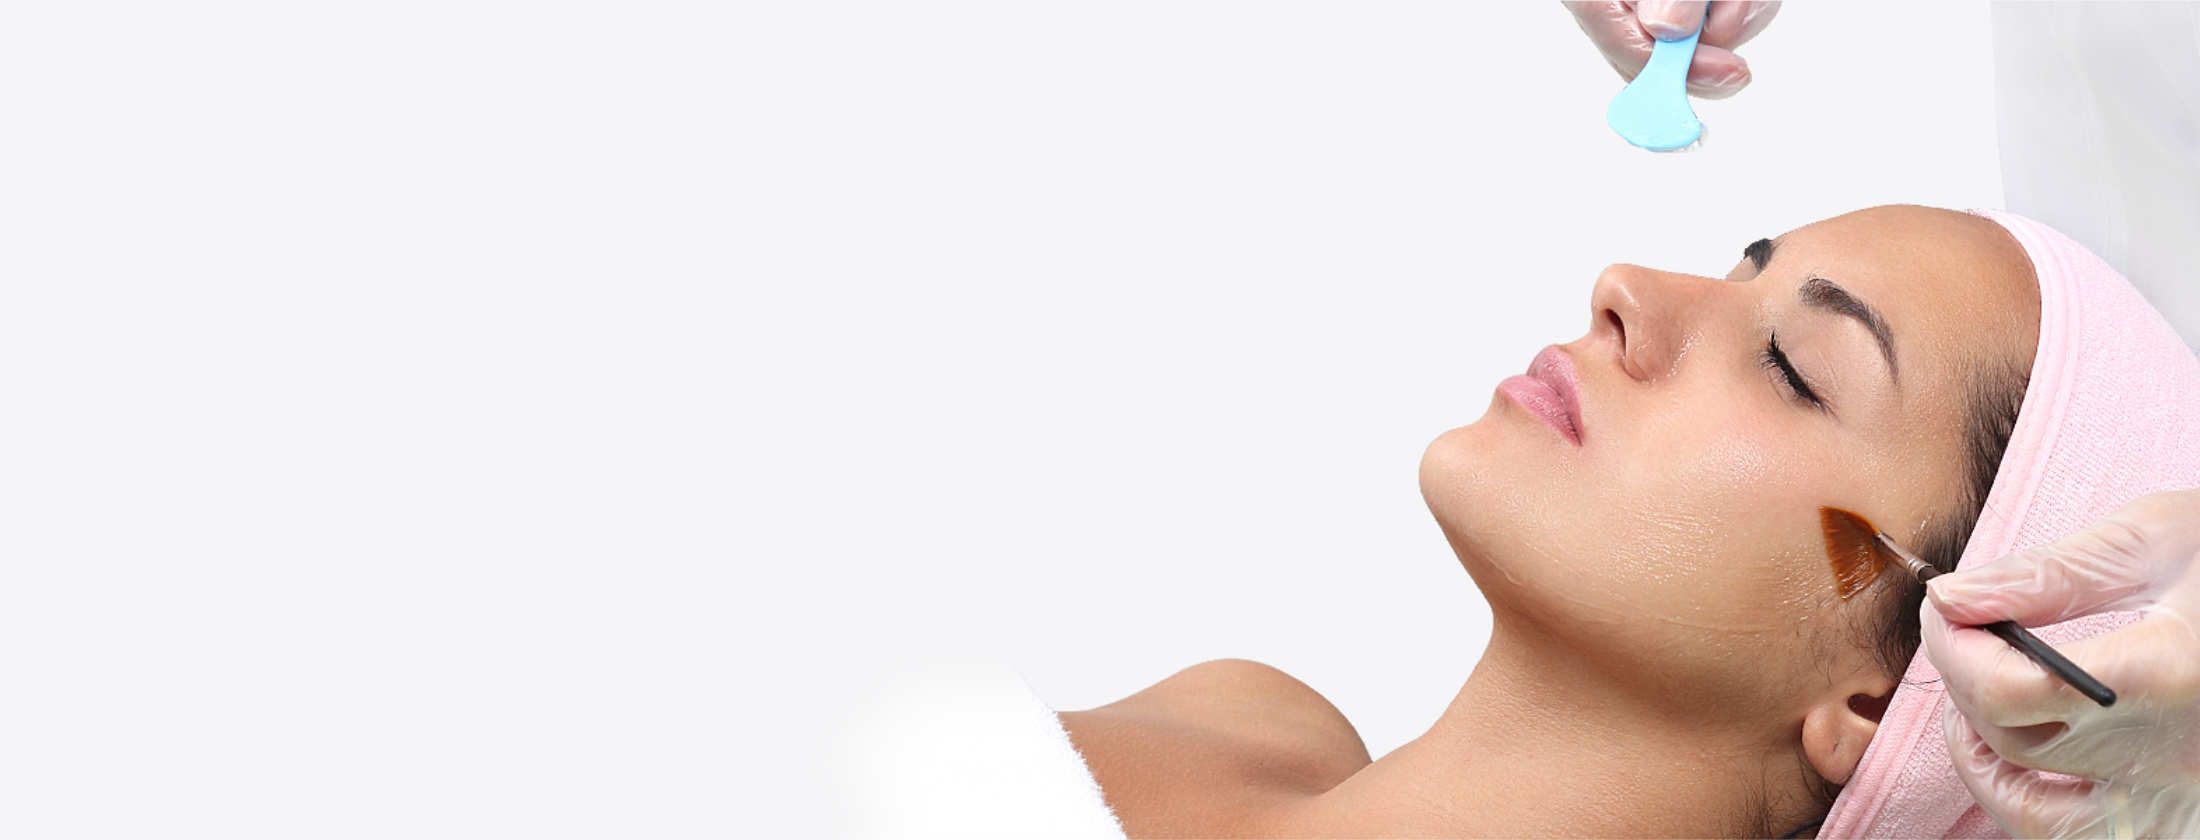 Frau mit einem gepflegten Gesicht liegt entspannt in ein Handtuch gehüllt. Eine Kosmetikerin trägt Fruchtsäure auf ihre Gesichtshaut auf. Die Flüssigkeit wirkt regenerierend auf die Haut. Anschließend wird per Peeling die oberste Hautschicht abgetragen.